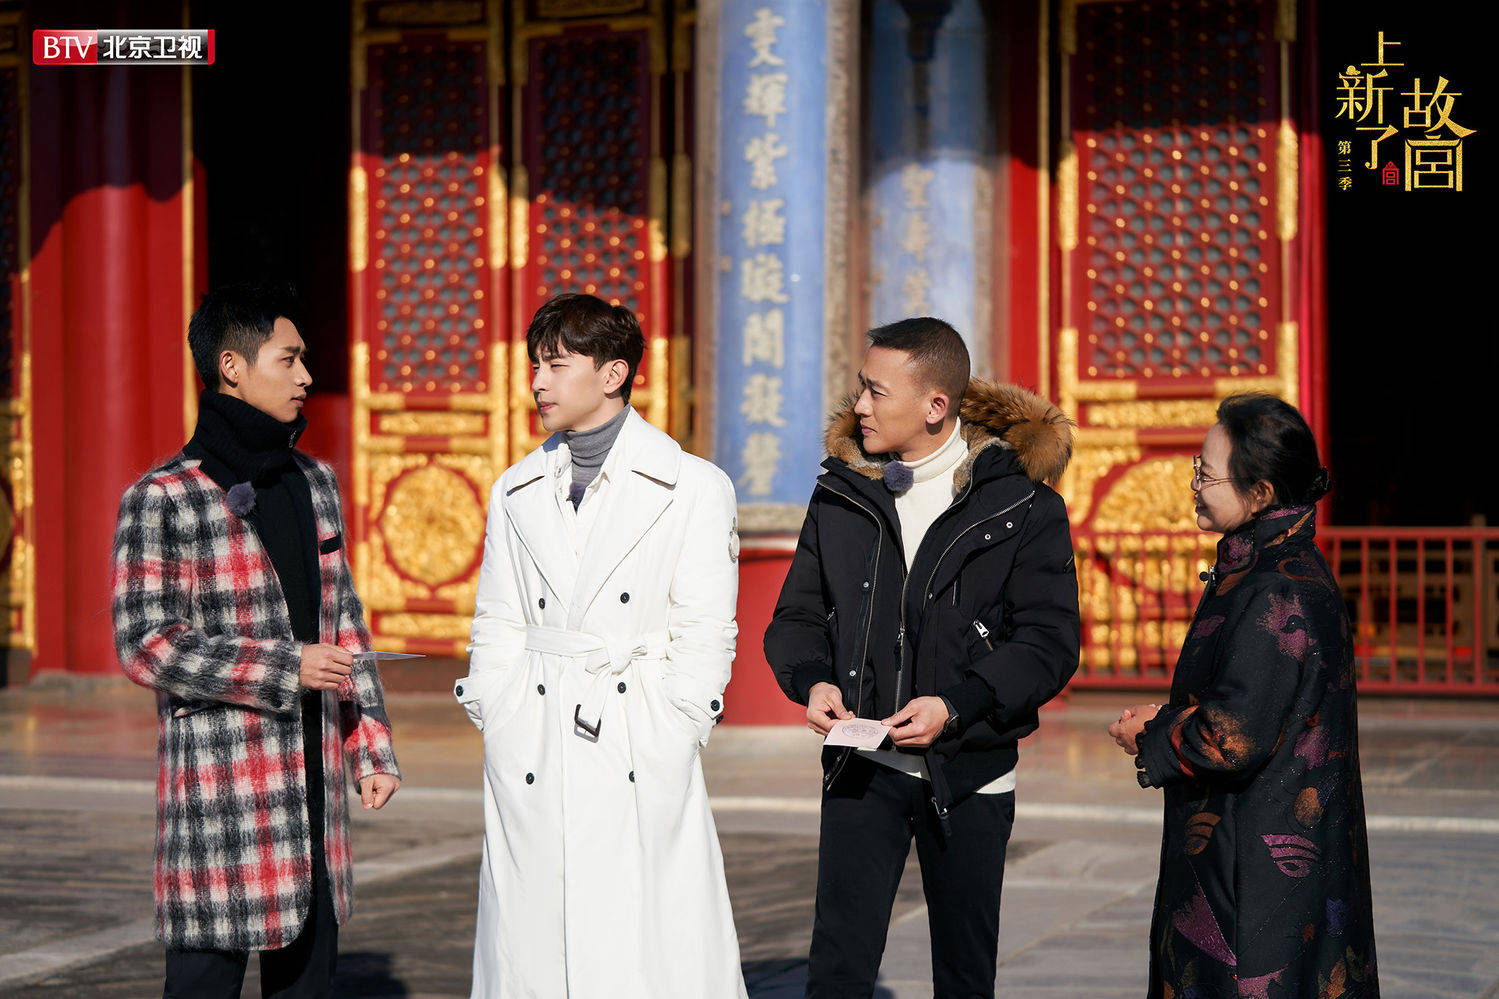 [消息]北京卫视《上新了·故宫3》本周收官  邓伦、魏晨、聂远寻找紫禁城最神奇的色彩